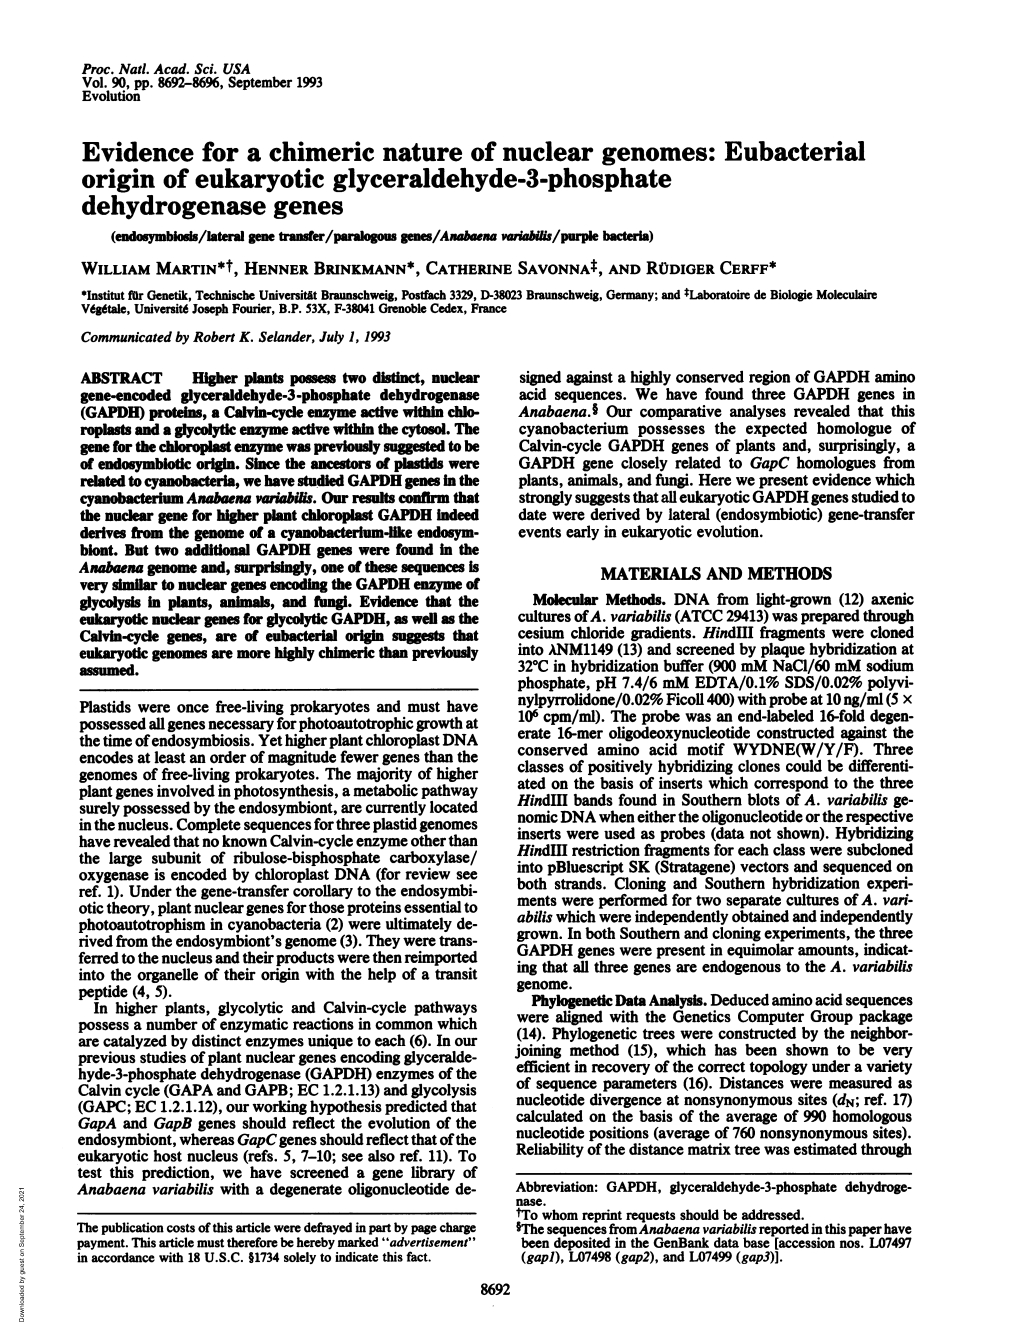 Eubacterial Origin of Eukaryotic Glyceraldehyde-3-Phosphate